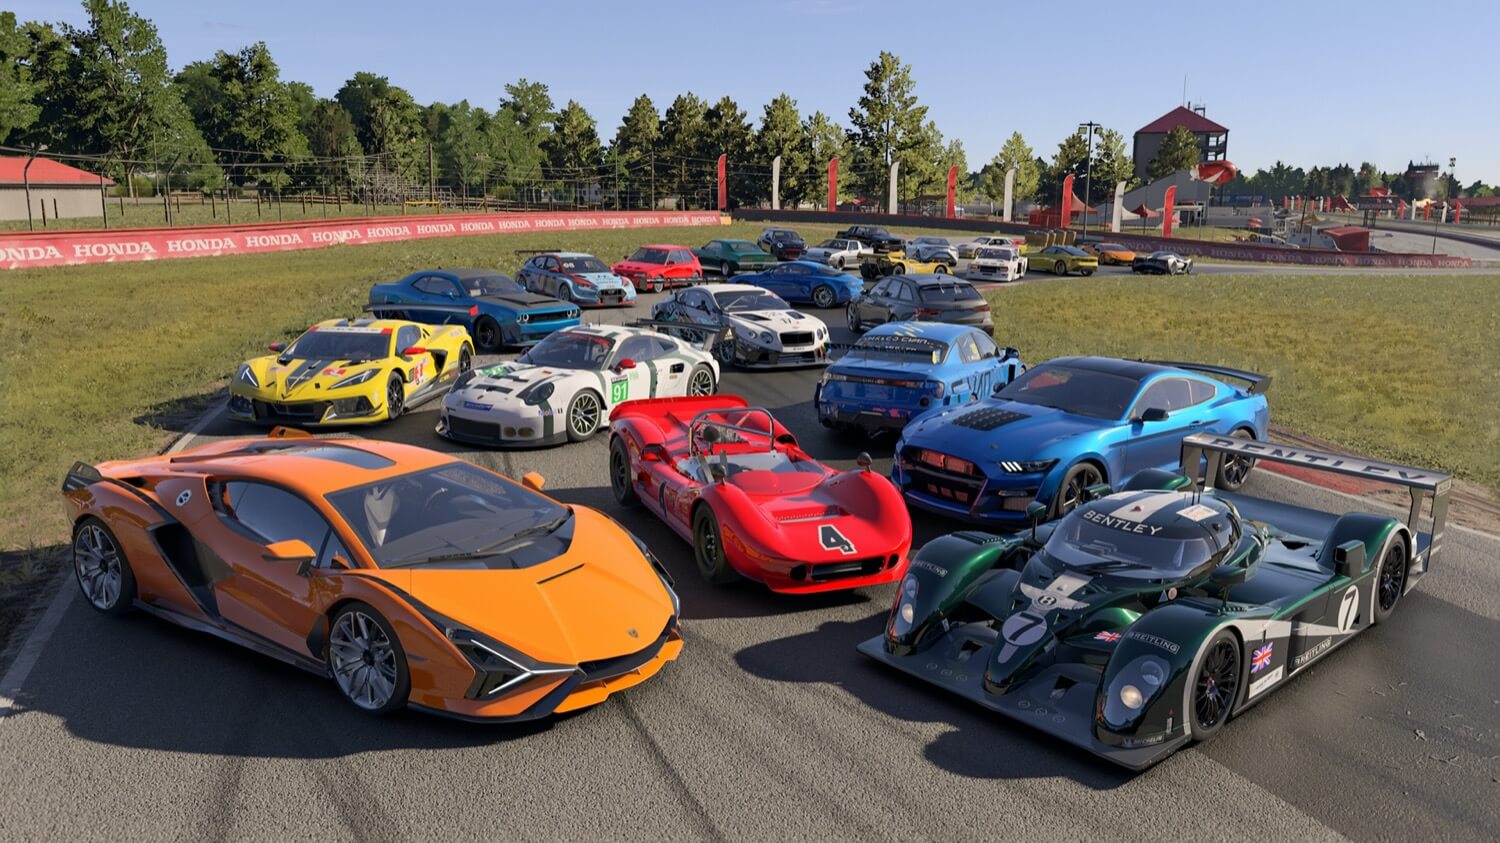 В Forza Motorsport больше улучшений в симуляции физики, чем в Forza Motorsport 5, 6 и 7 суммарно: с сайта NEWXBOXONE.RU